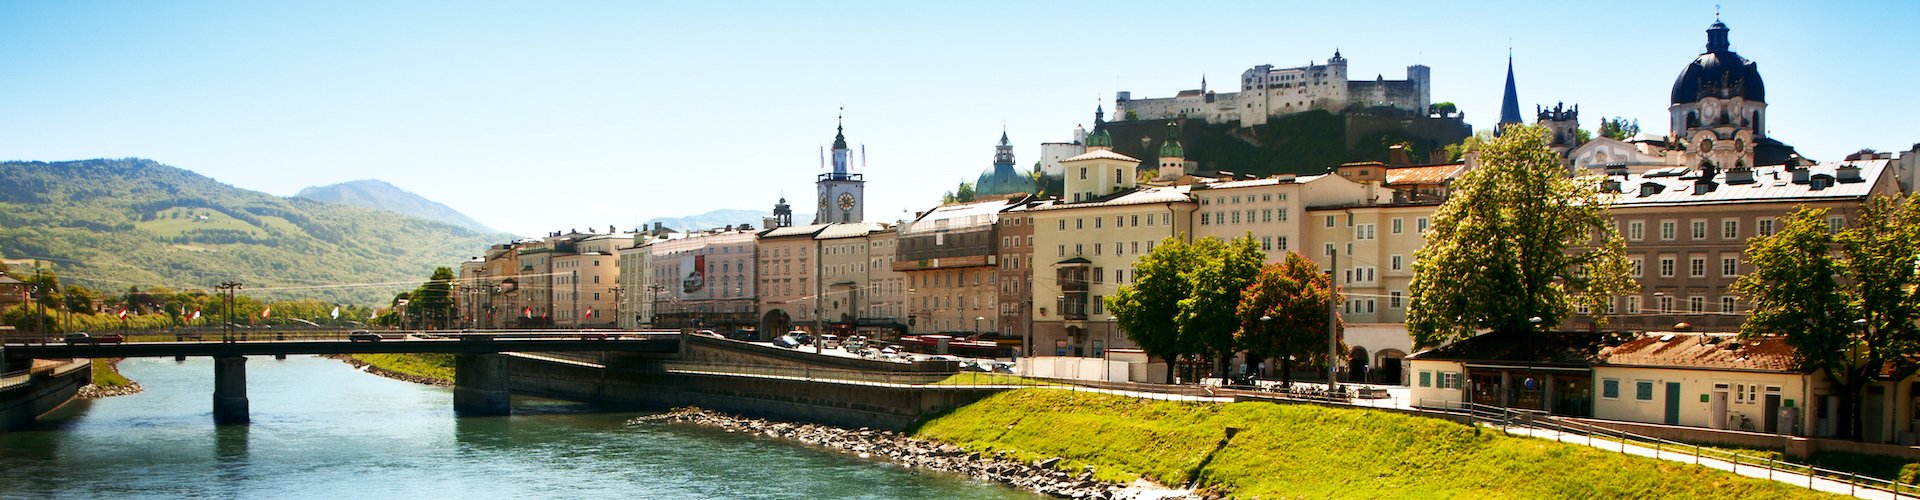 Ausflugsziel Salzburg